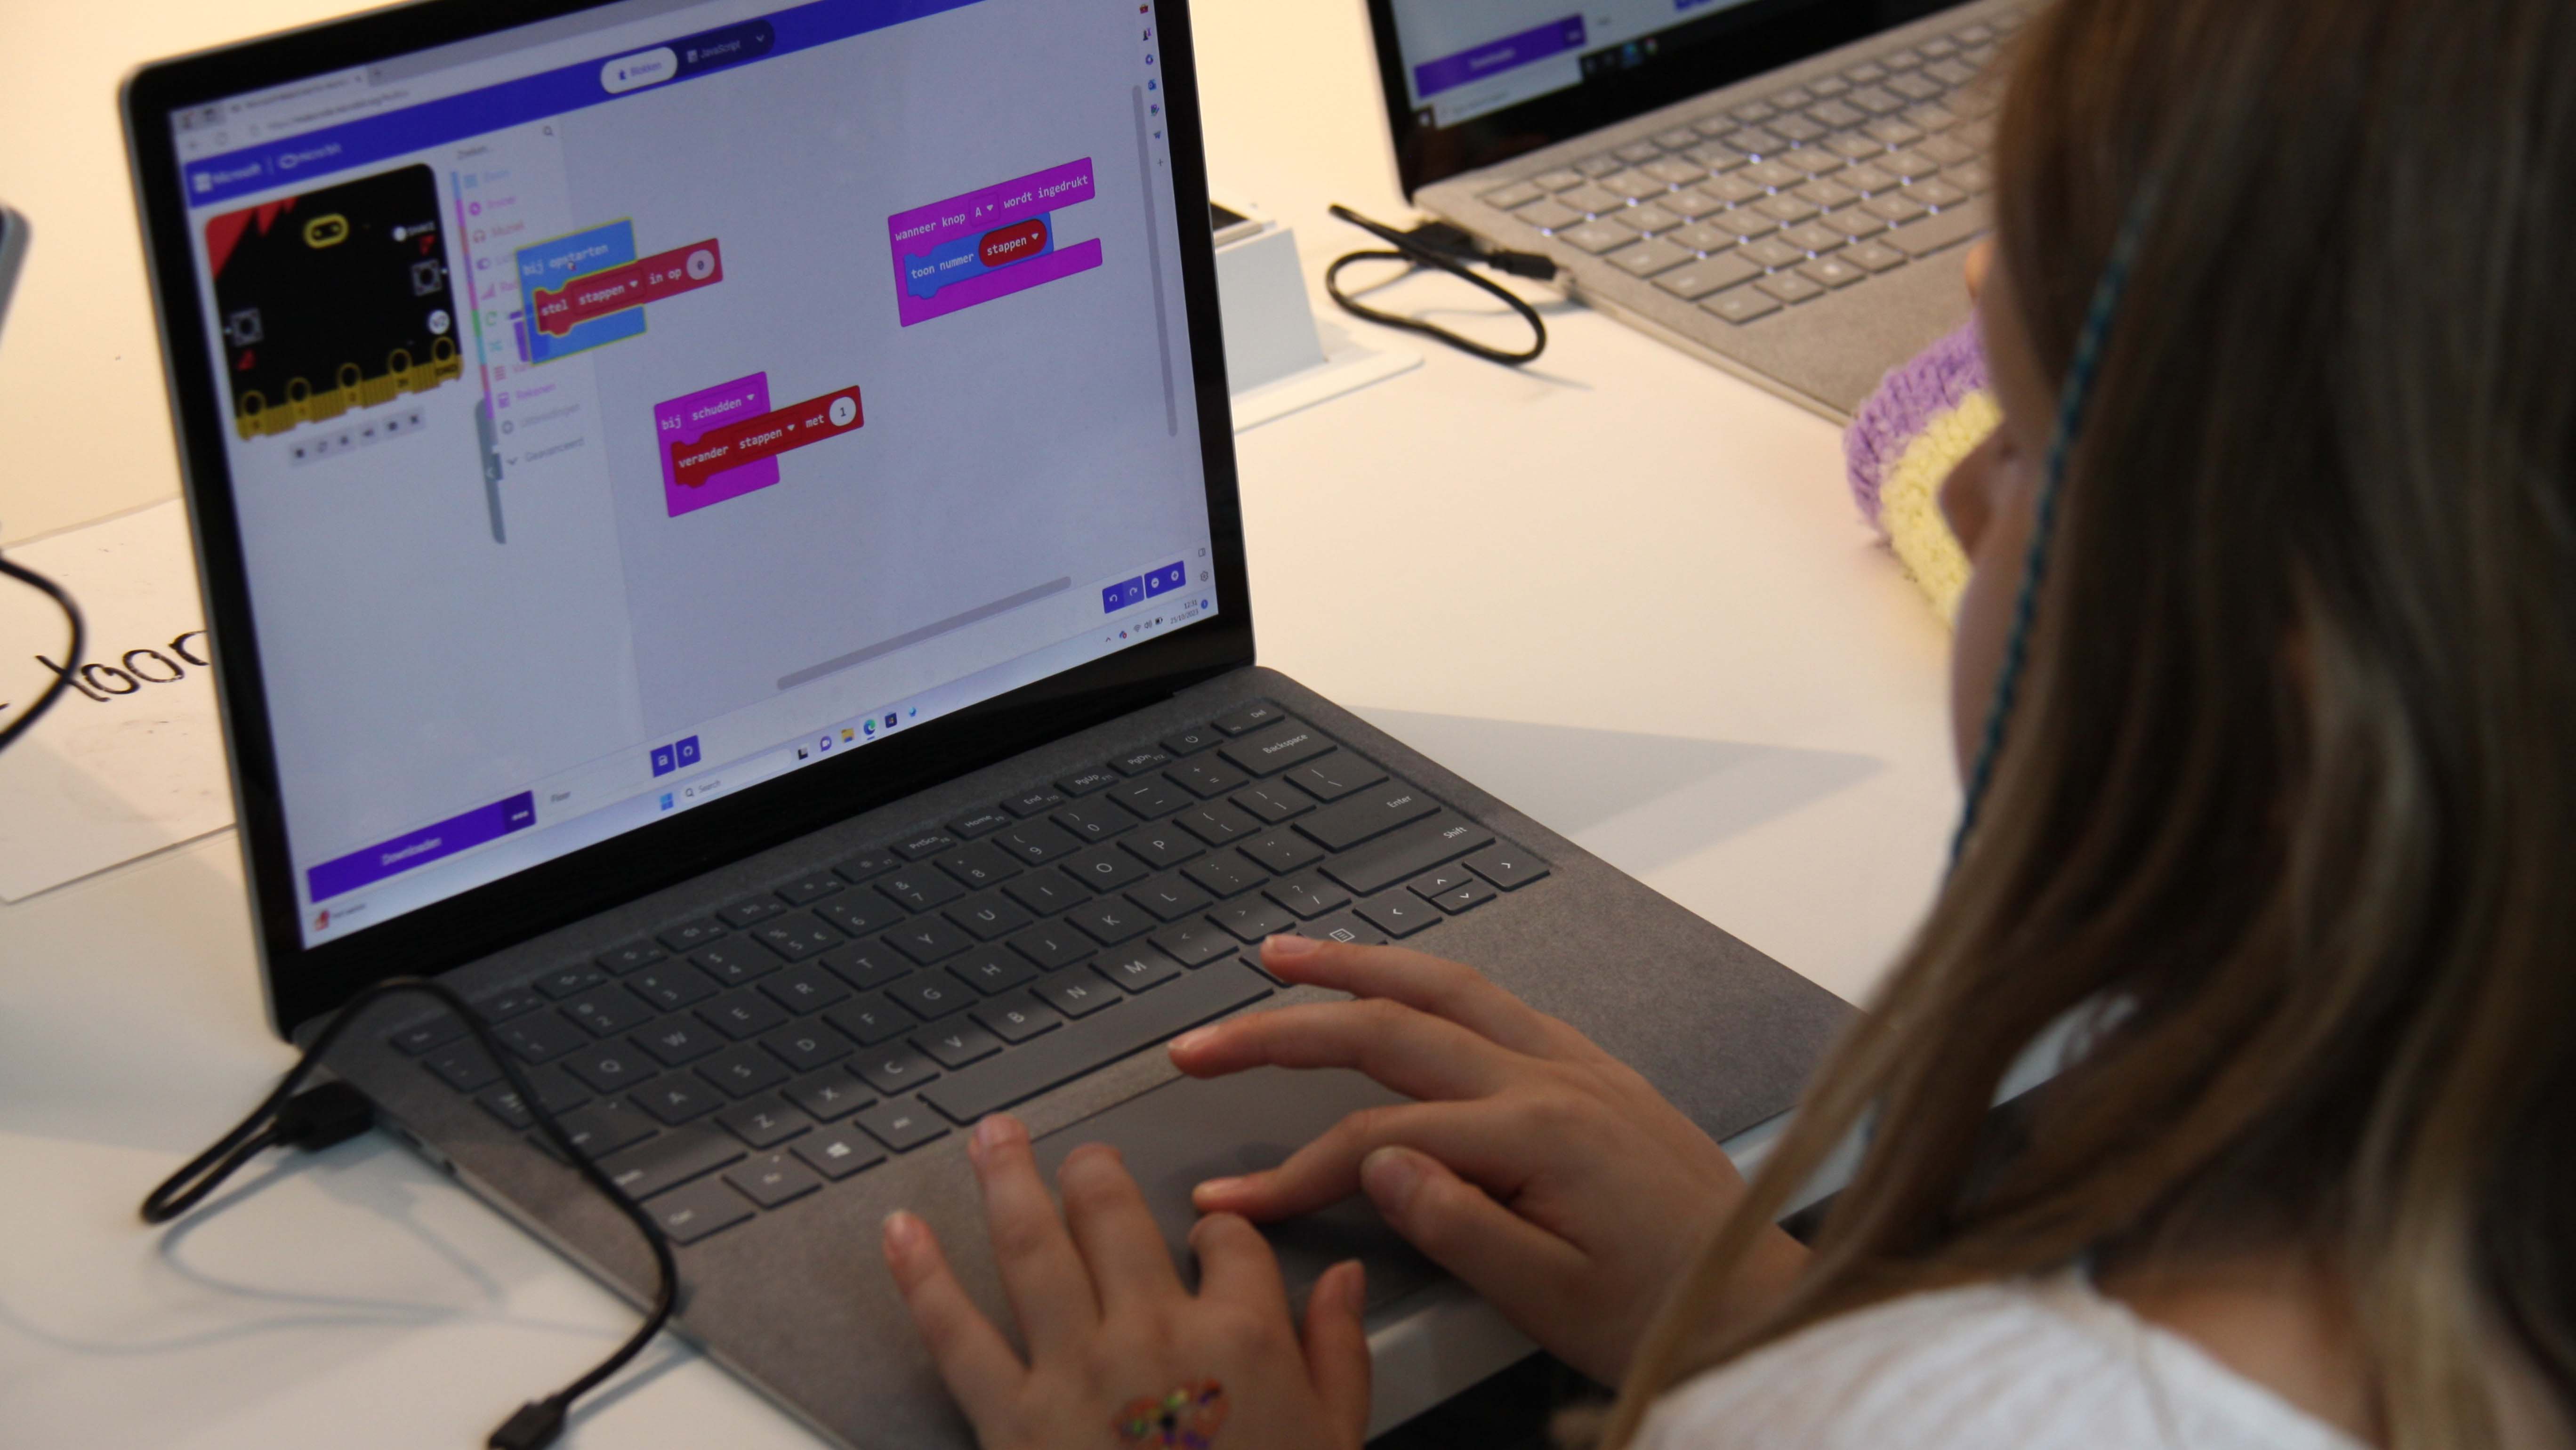 Een meisje werkt op een laptop, het scherm toont de MakeCode website